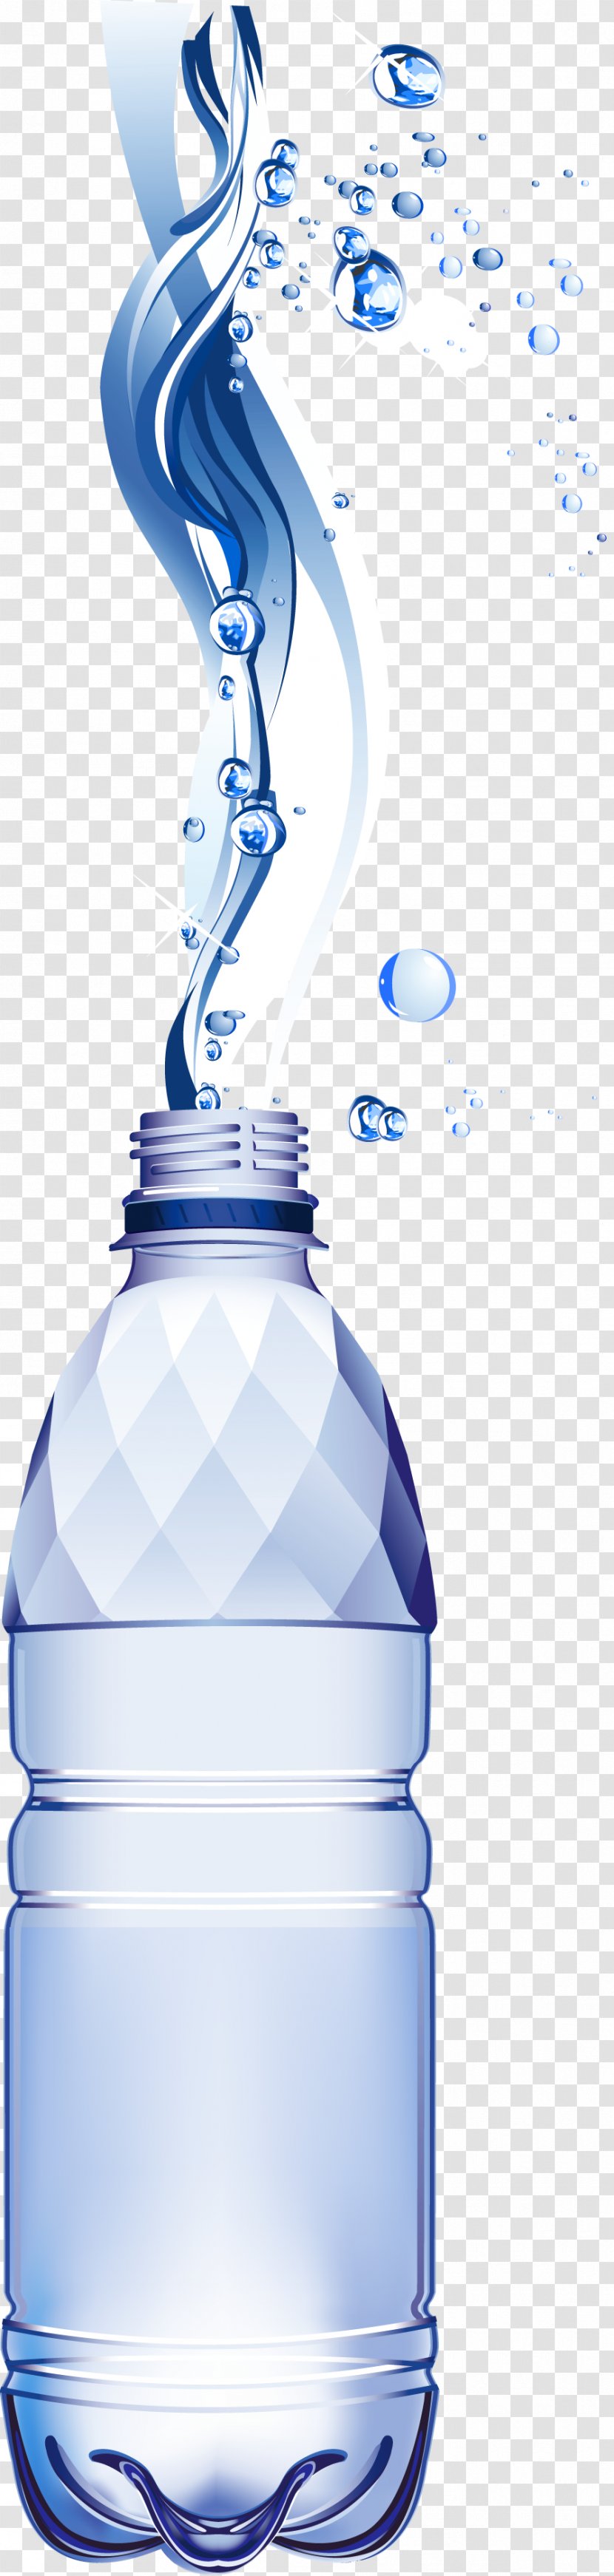 Bottled Water Bottles - Plastic Bottle - Bottel Transparent PNG